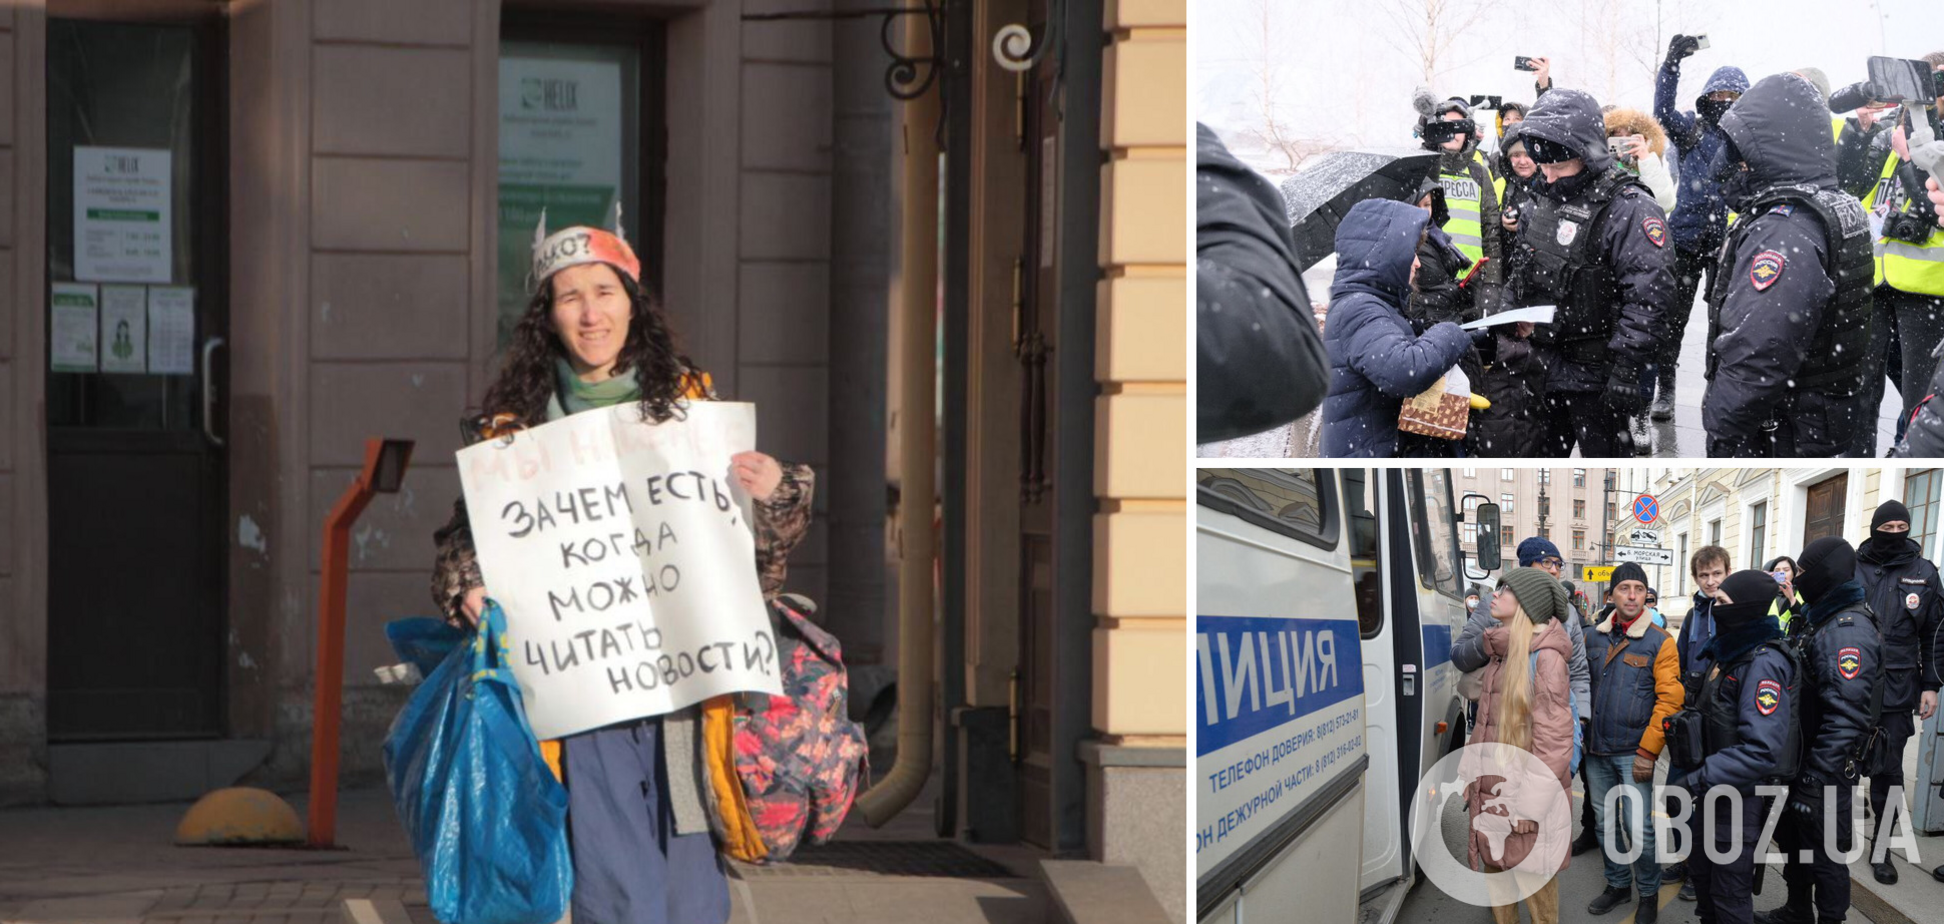 В России массово разгоняют антивоенные митинги: идут задержания. Фото и видео